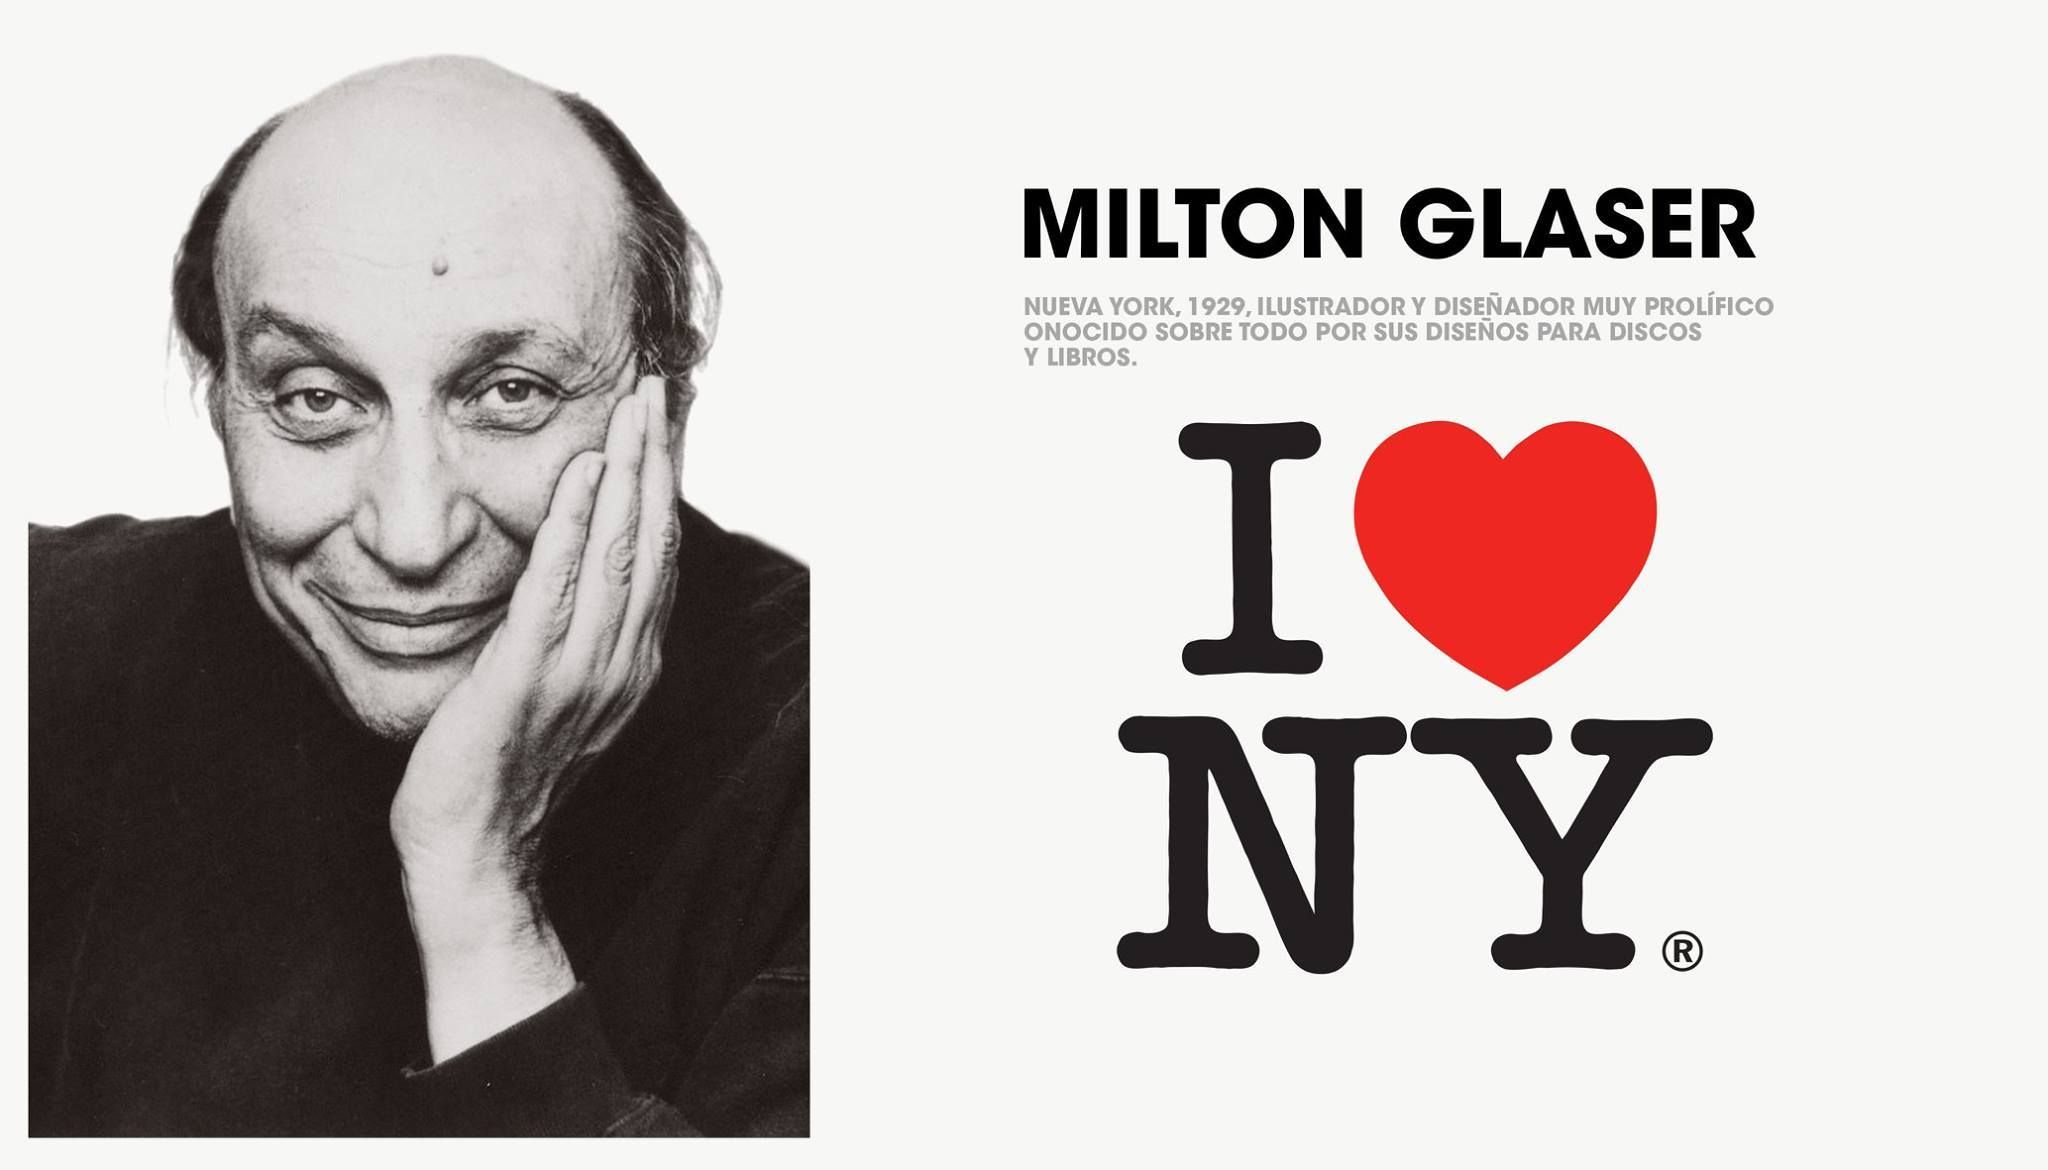  「I ♥ NY」 用設計帶來幸福-捷可印